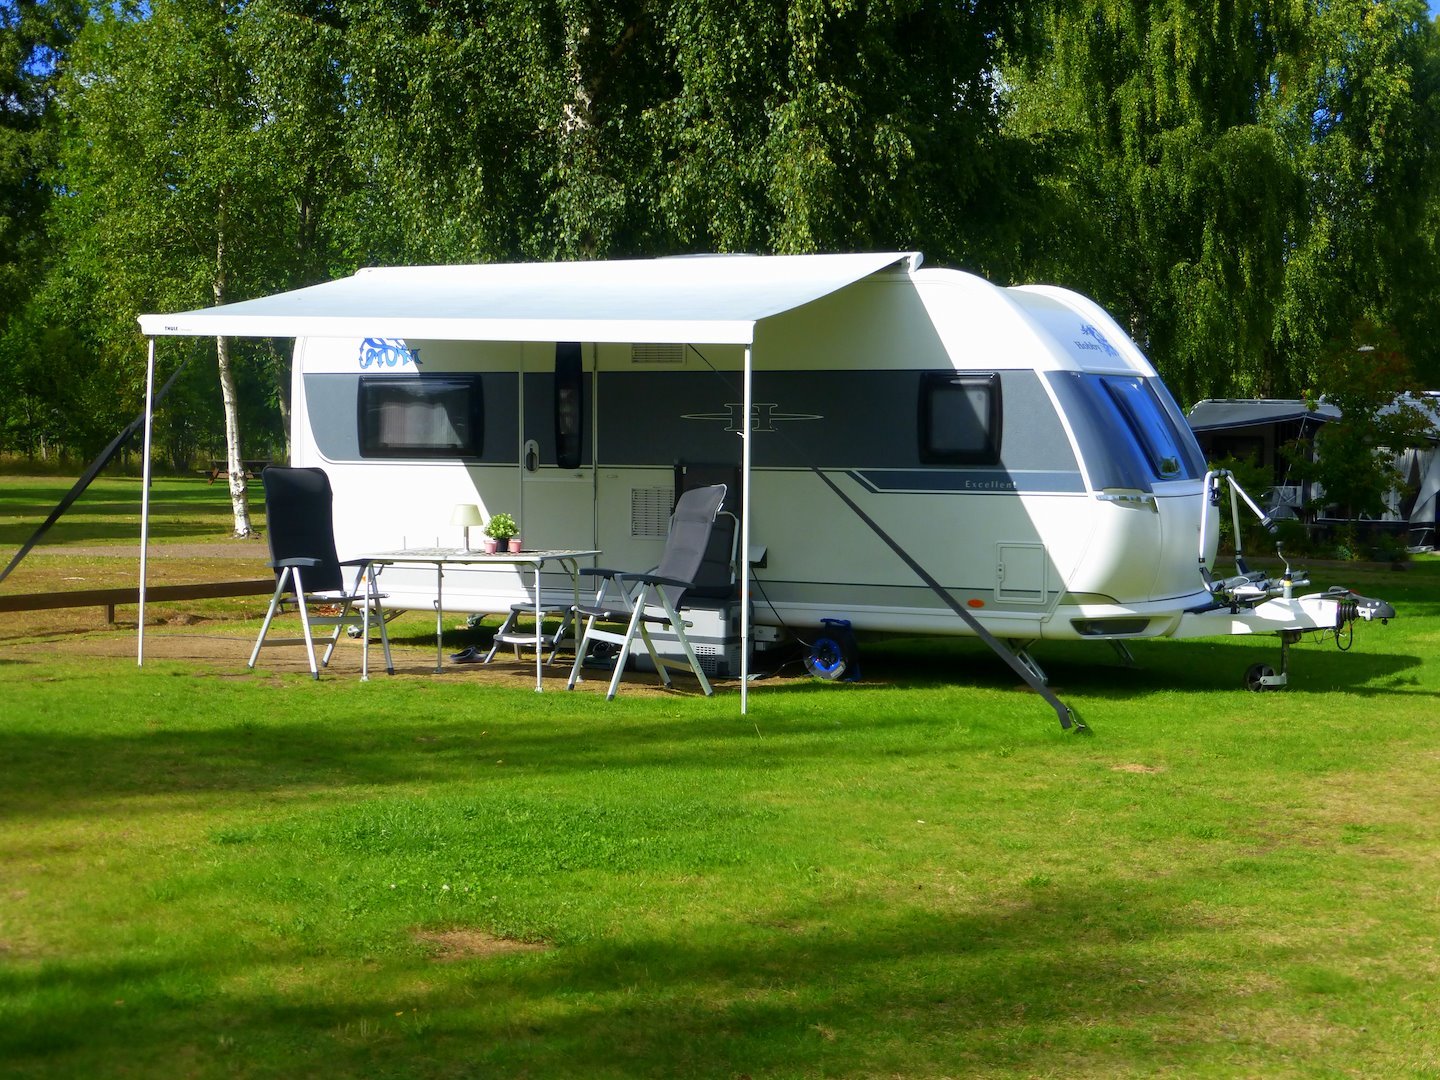 Plaats voor caravan/camper/tent (3-6 pers. met stroom)